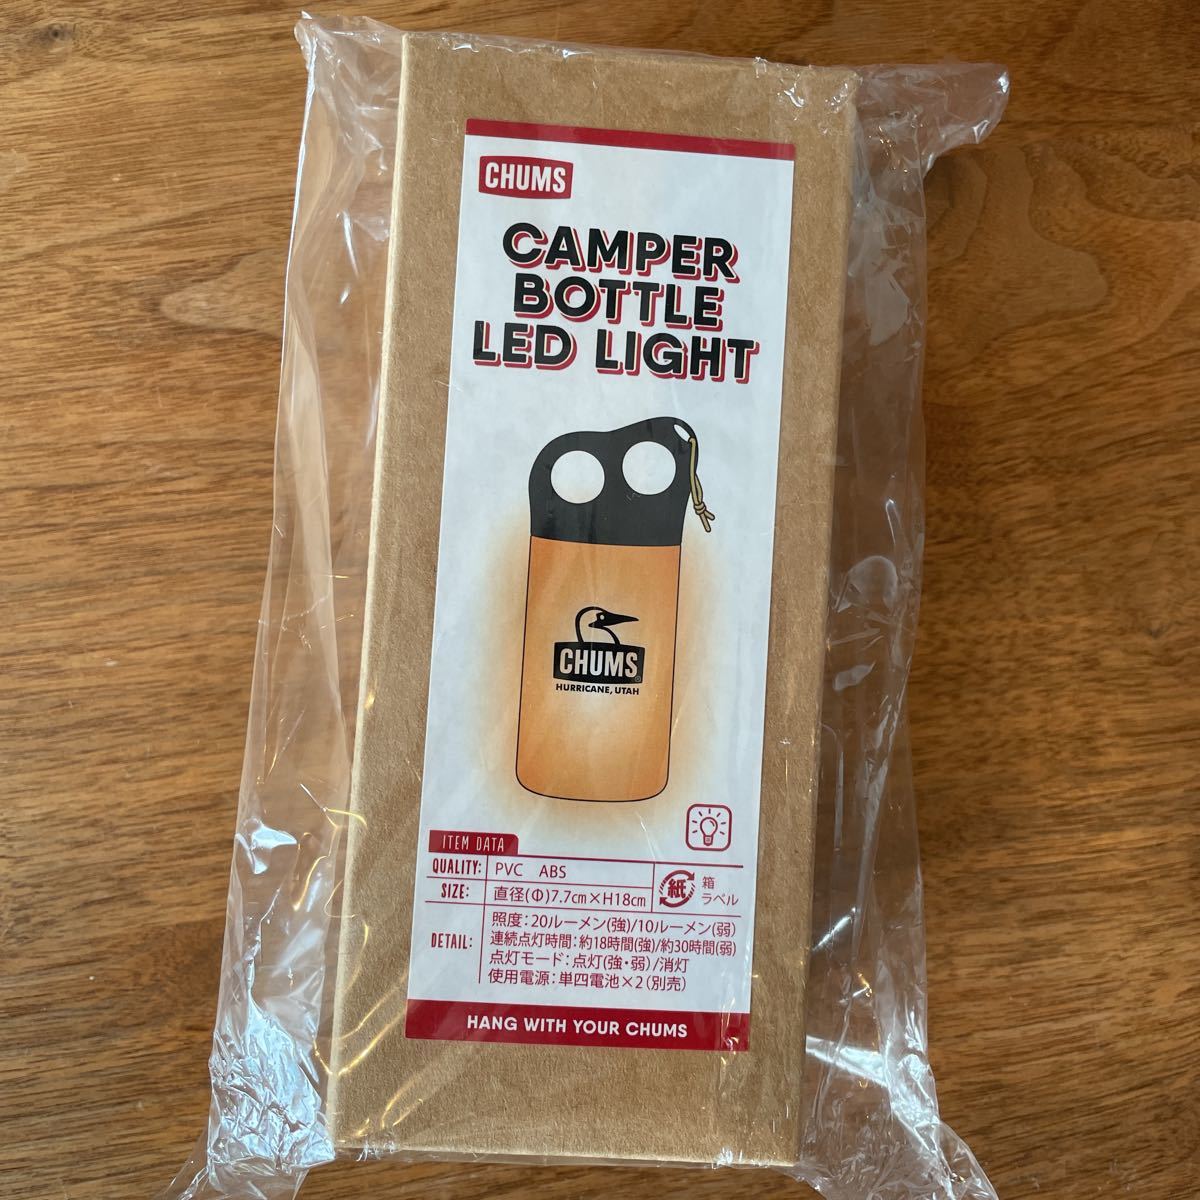 新品 チャムス CHUMS キャンパー ボトル LED ライト Camper Bottle LED Light CH62-1741 ランタン  アウトドア キャンプ 照明 山 テント 25(LED)｜売買されたオークション情報、ヤフオク! の商品情報をアーカイブ公開 